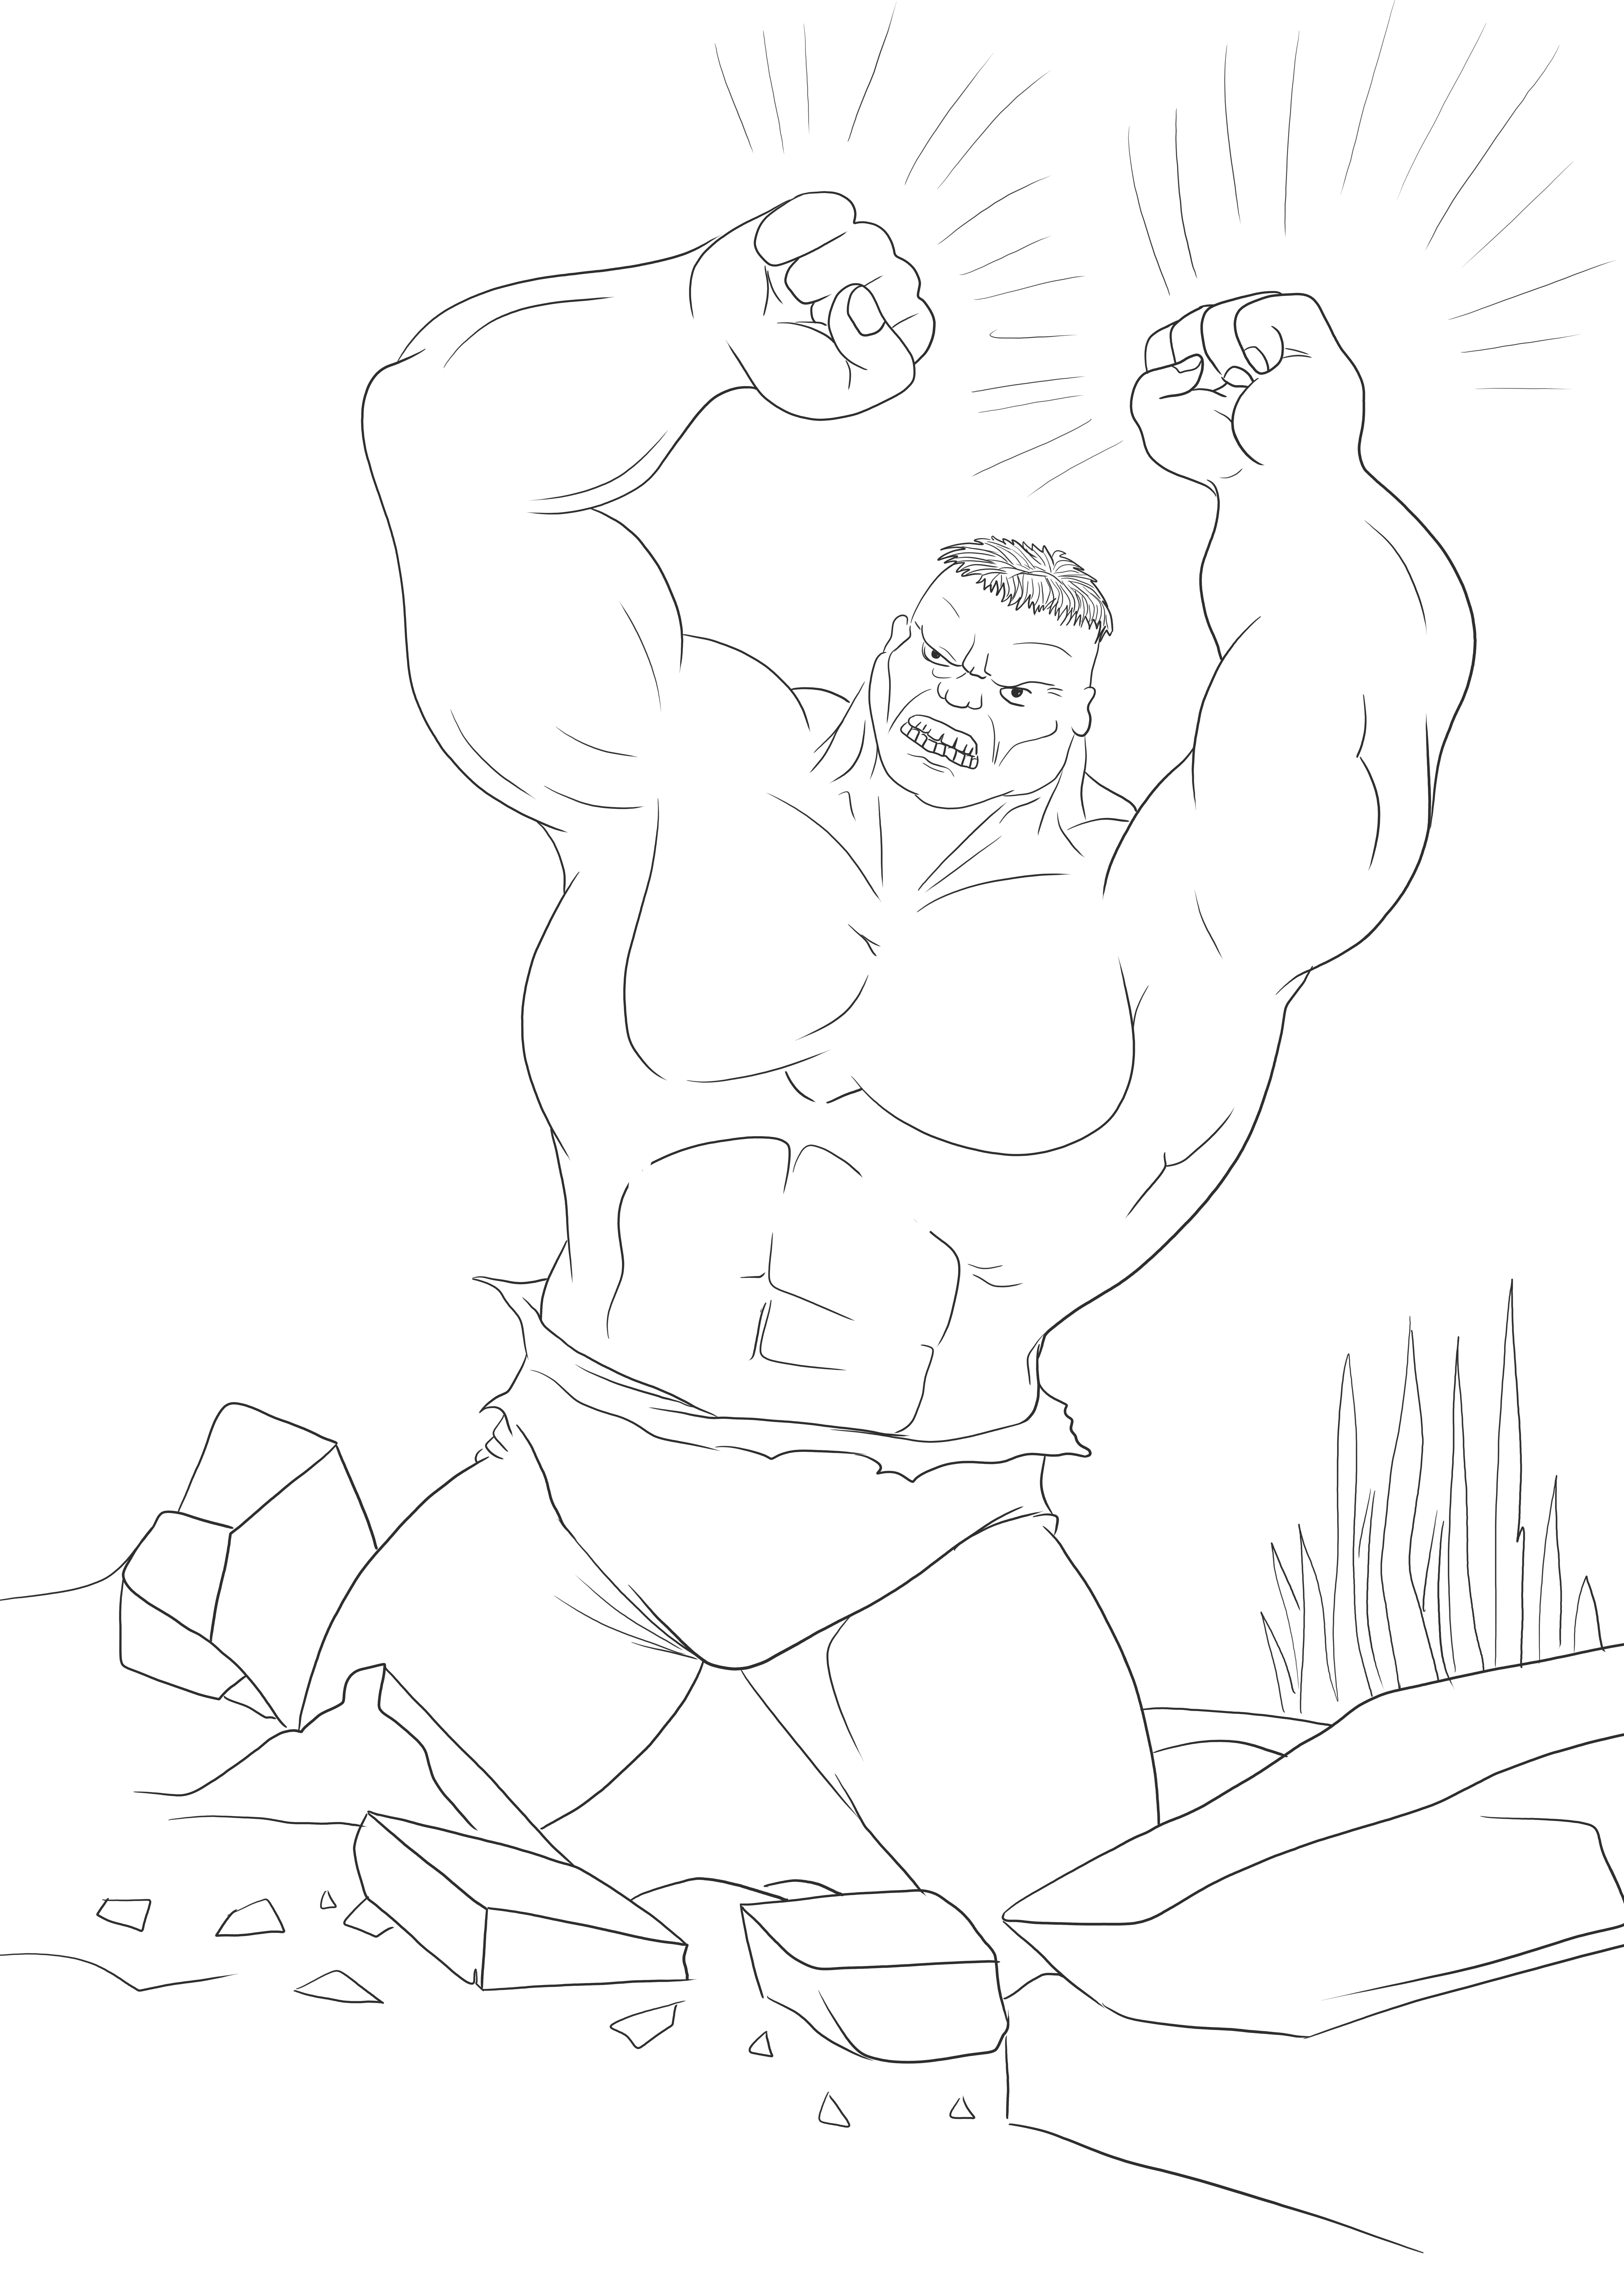 Hulk yang kuat siap menghancurkan gratis untuk menyimpan atau mencetak gambar